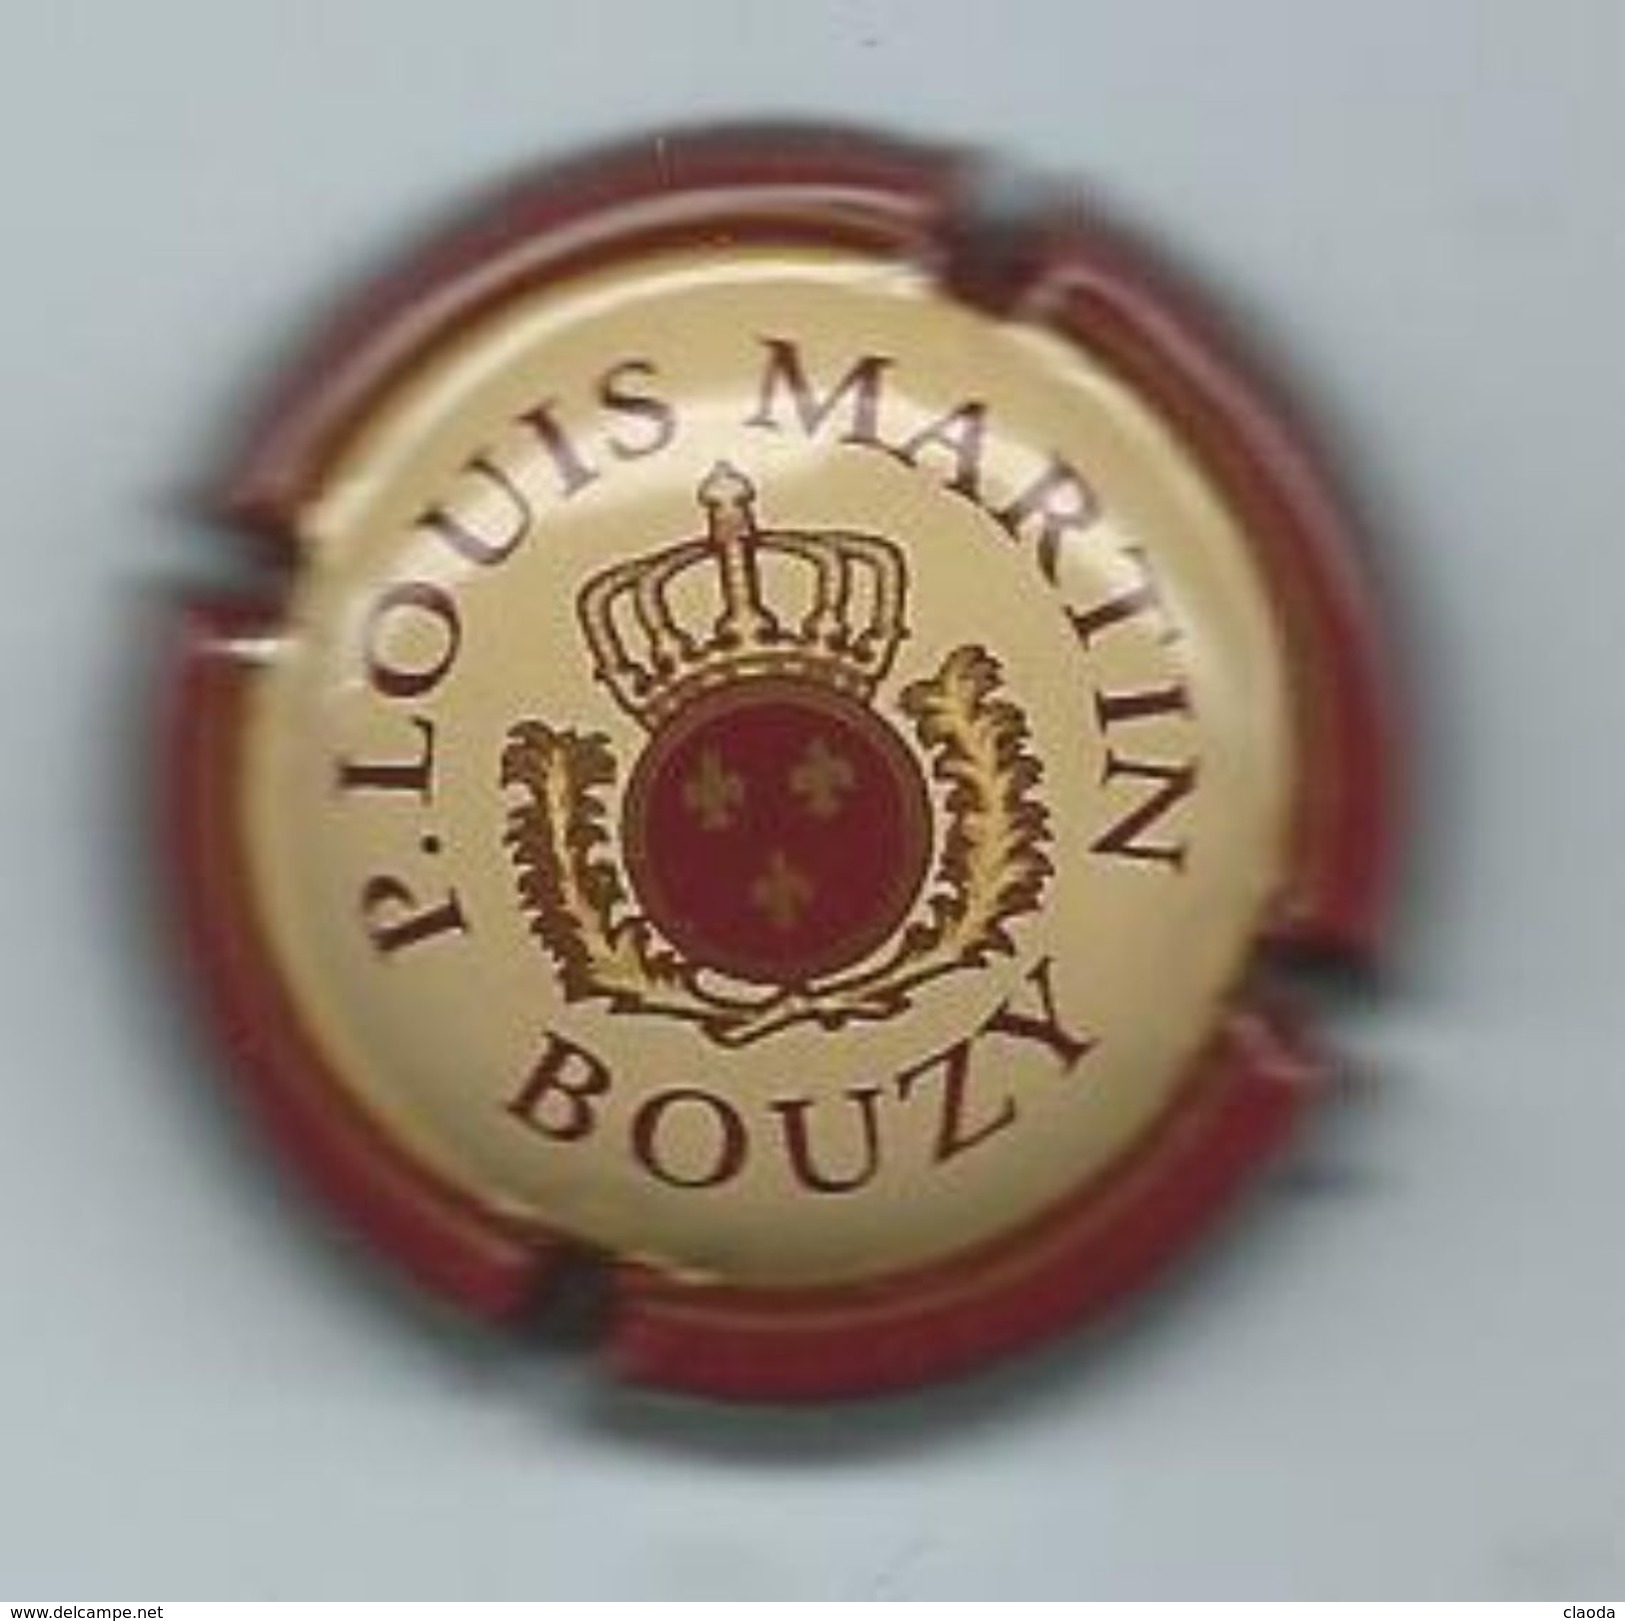 213 CH - CHAMPAGNE LOUIS MARTIN - BOUZY - Bouzy